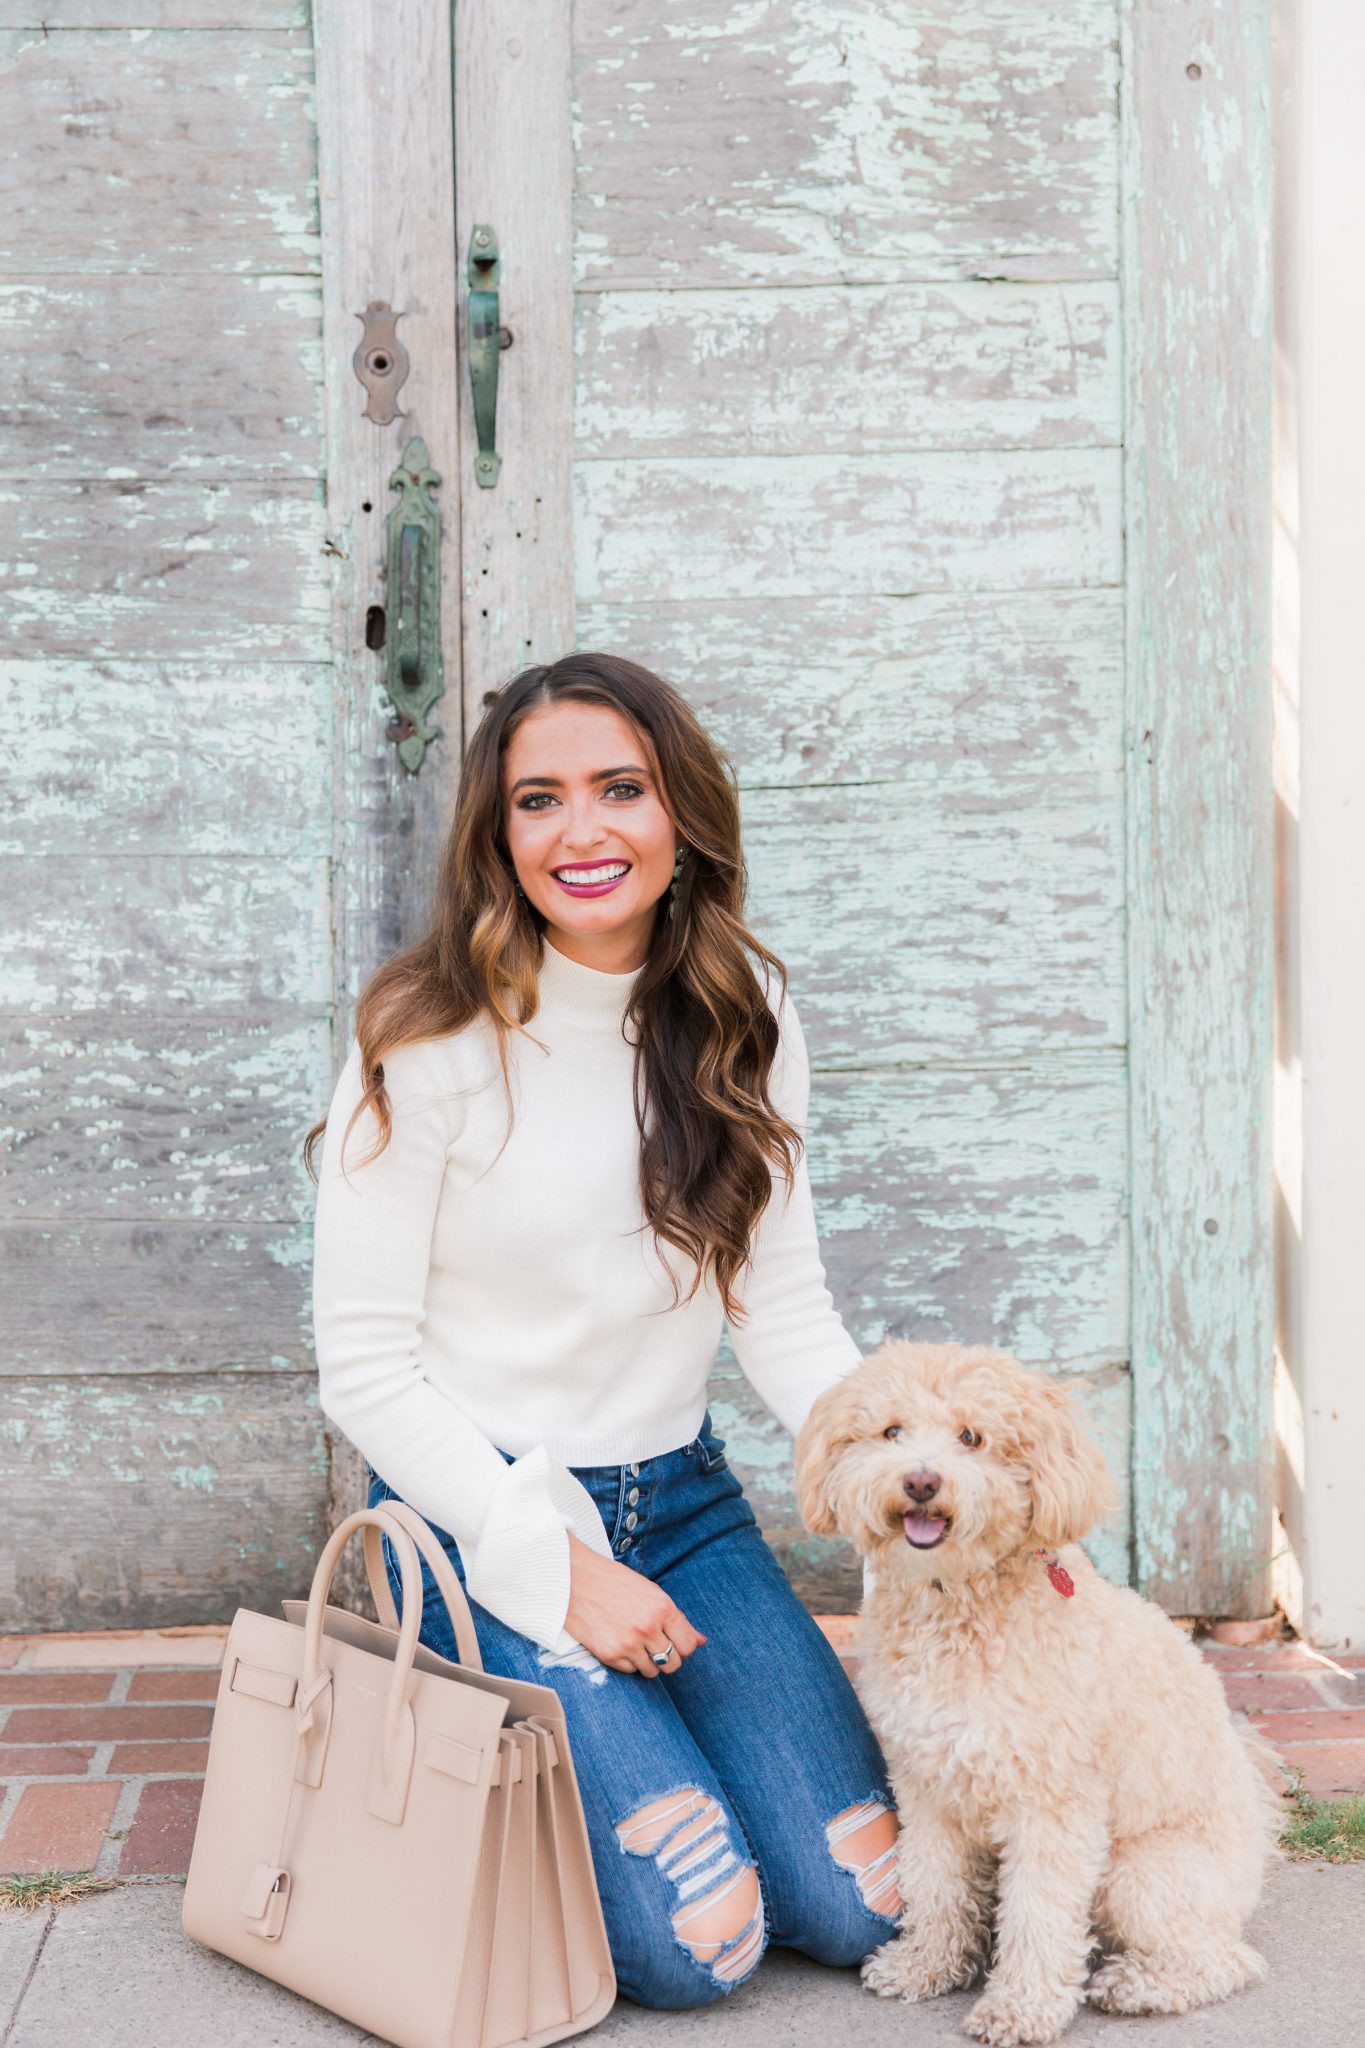 About popular Orange County fashion blogger, Maxie Elise